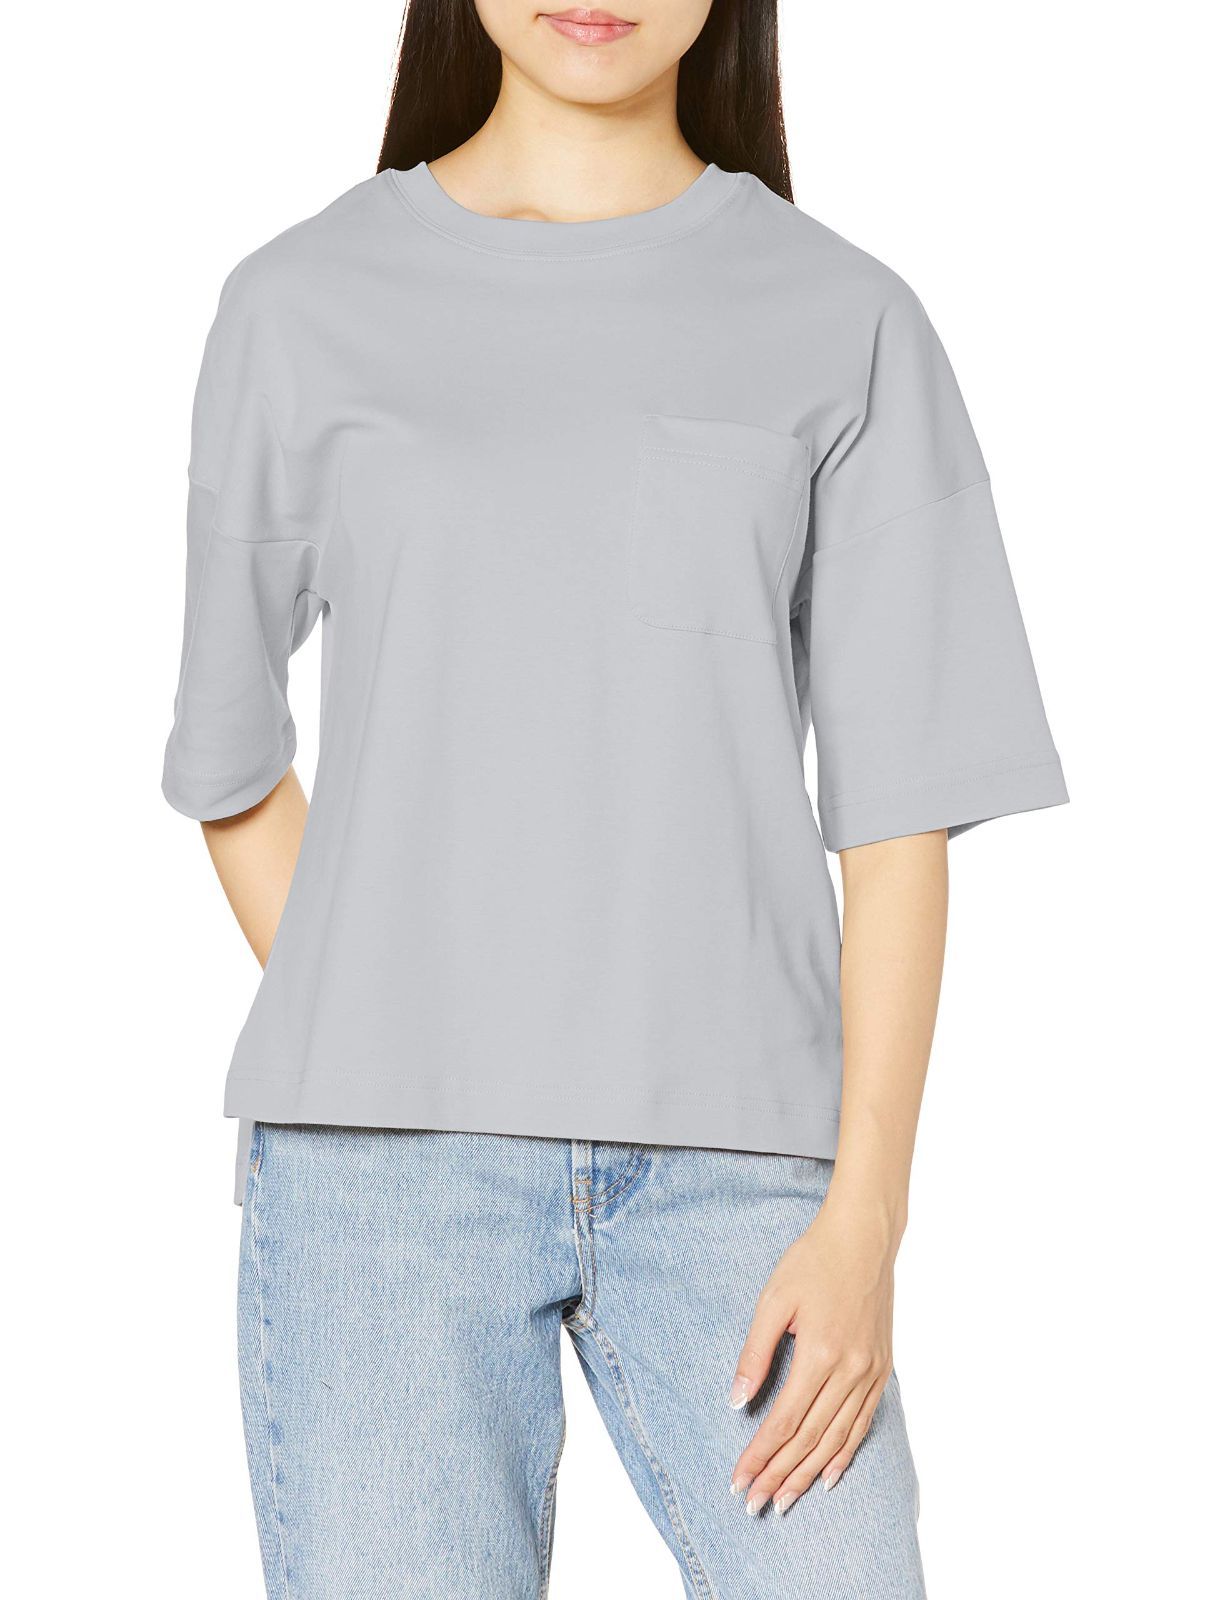 【特価セール】Tシャツ 厚手コットン 胸ポケット 綿100% [セシール] ゆるシルエット レディース